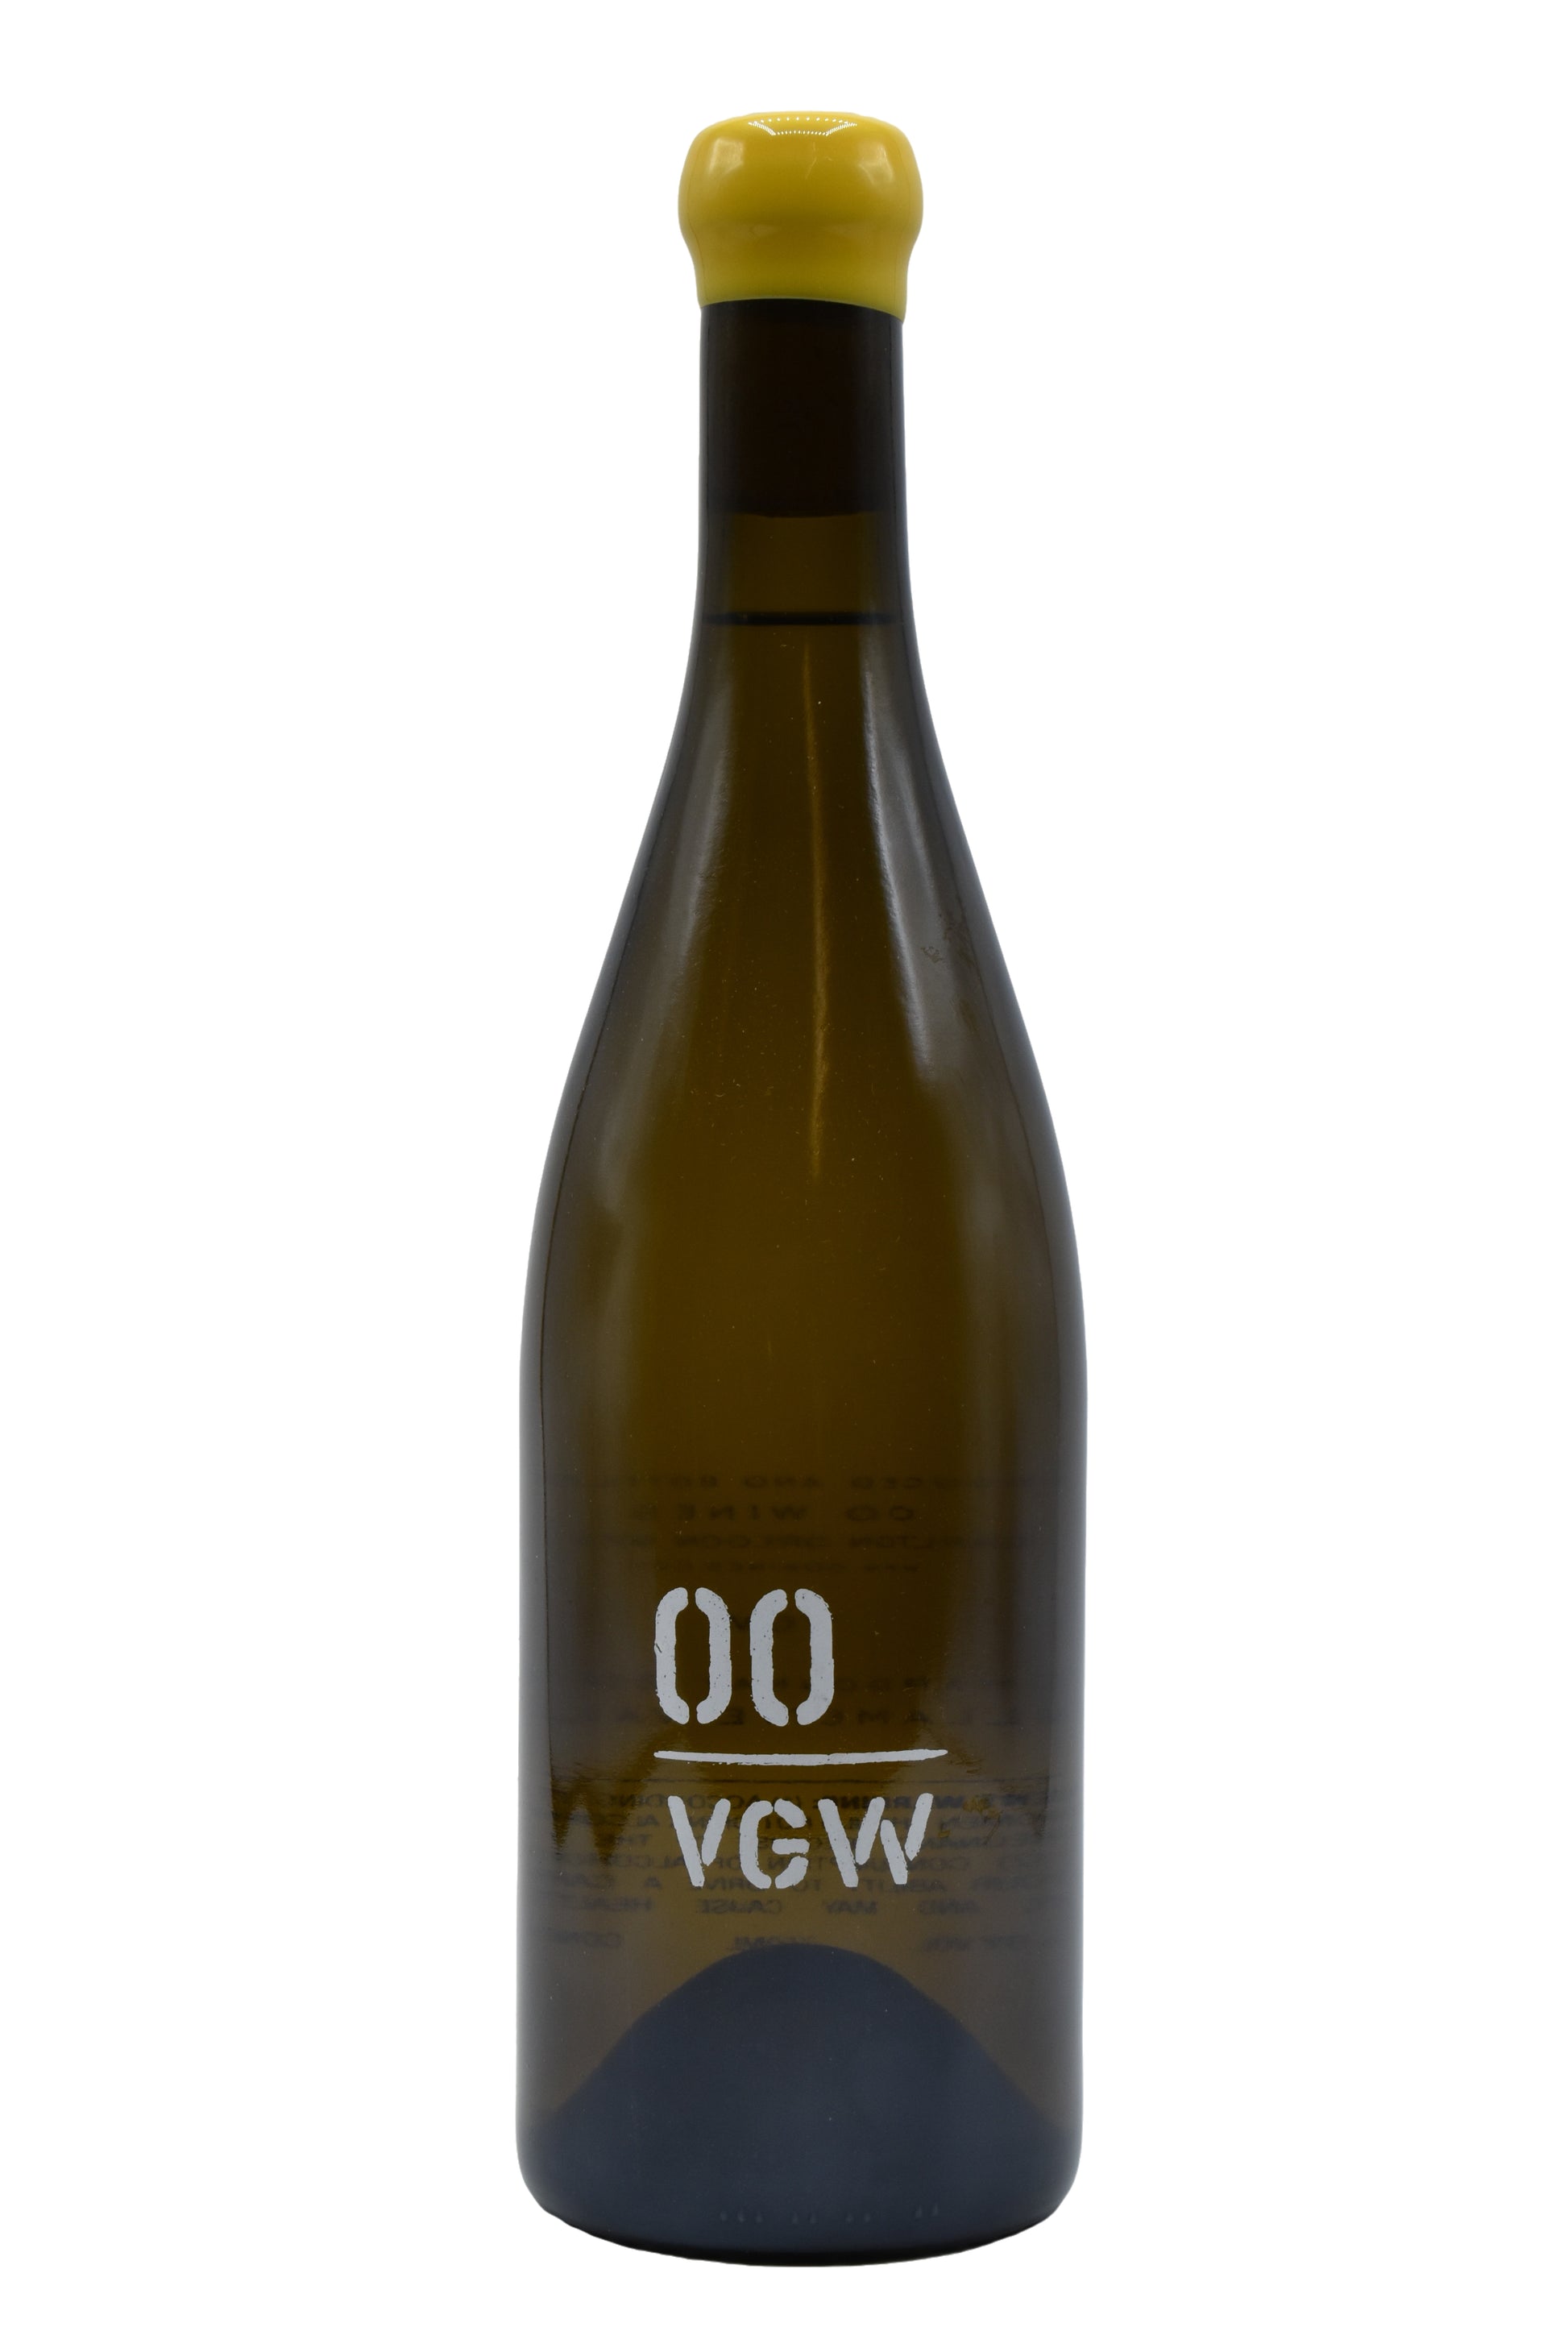 2019 00 Wines, VGW Chardonnay 750ml - Walker Wine Co.